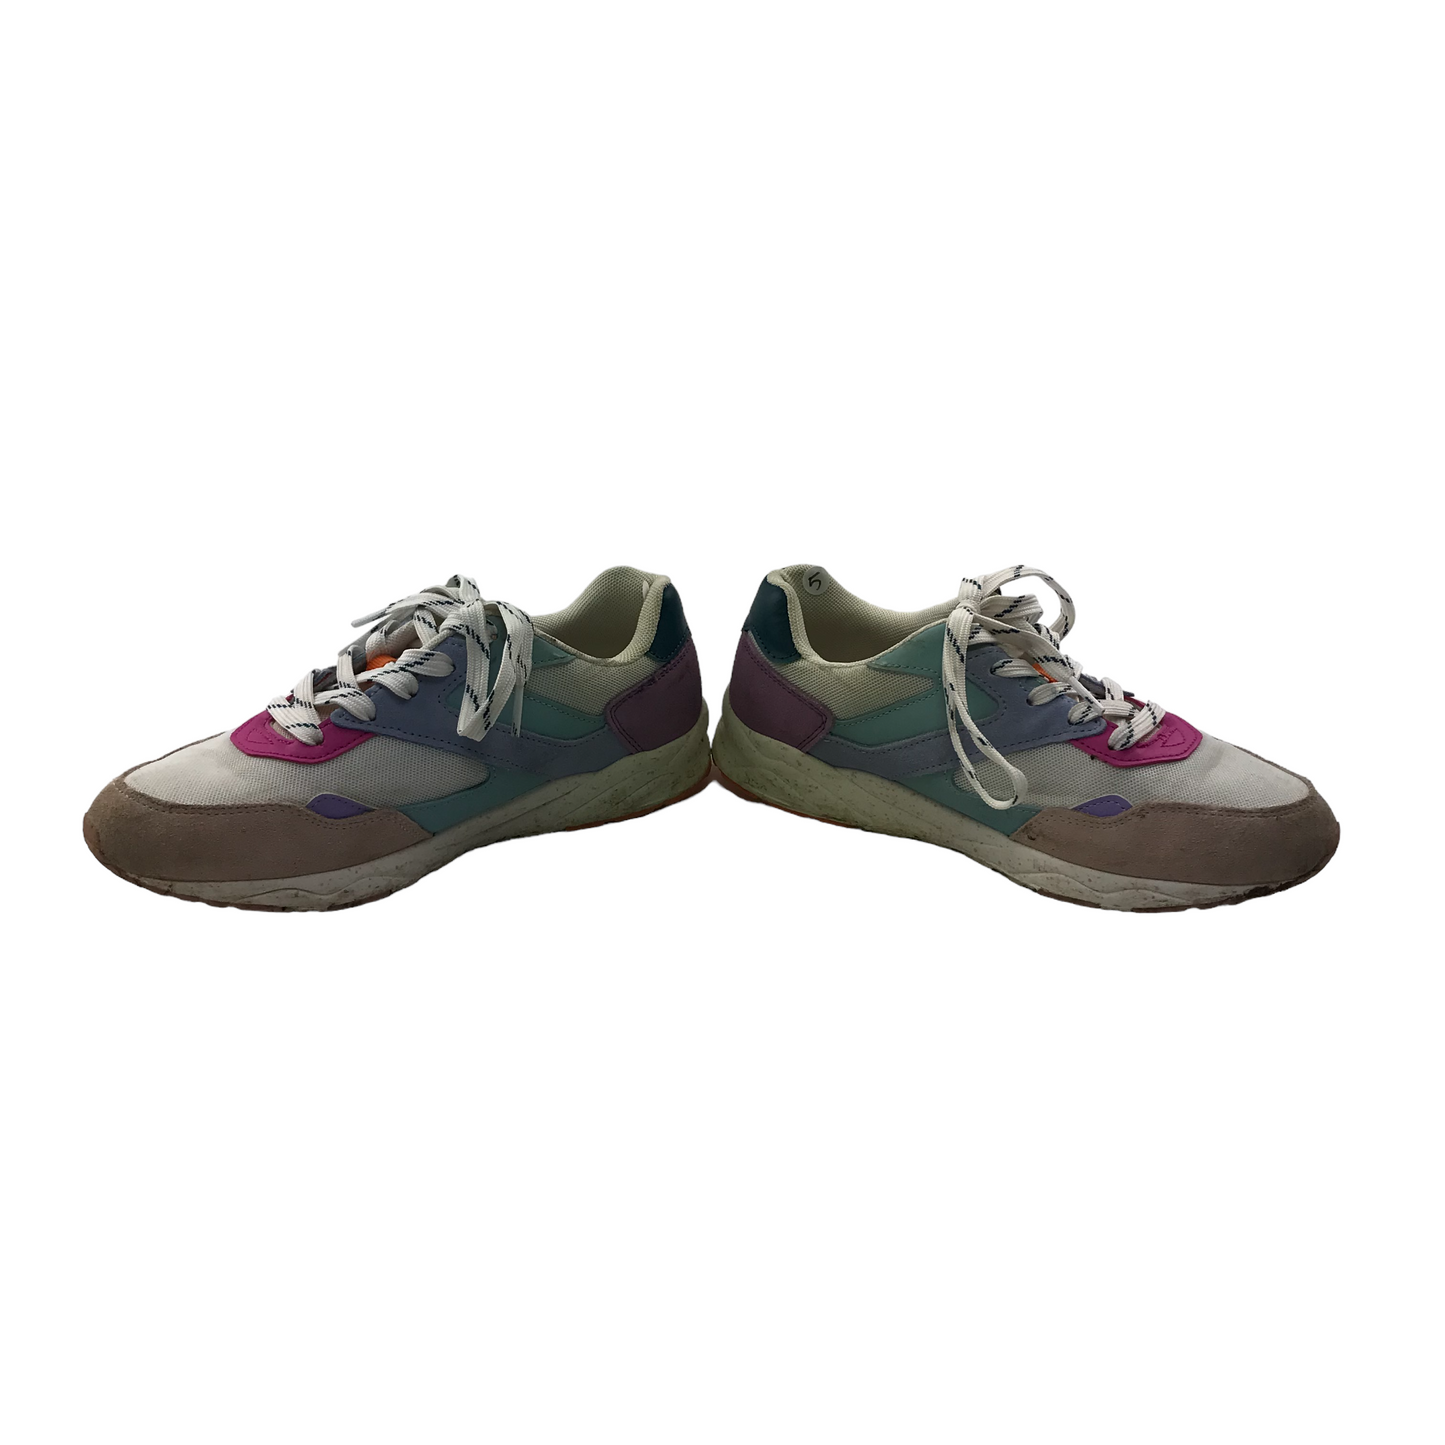 Next Multicolour Trainers Shoe Size 5